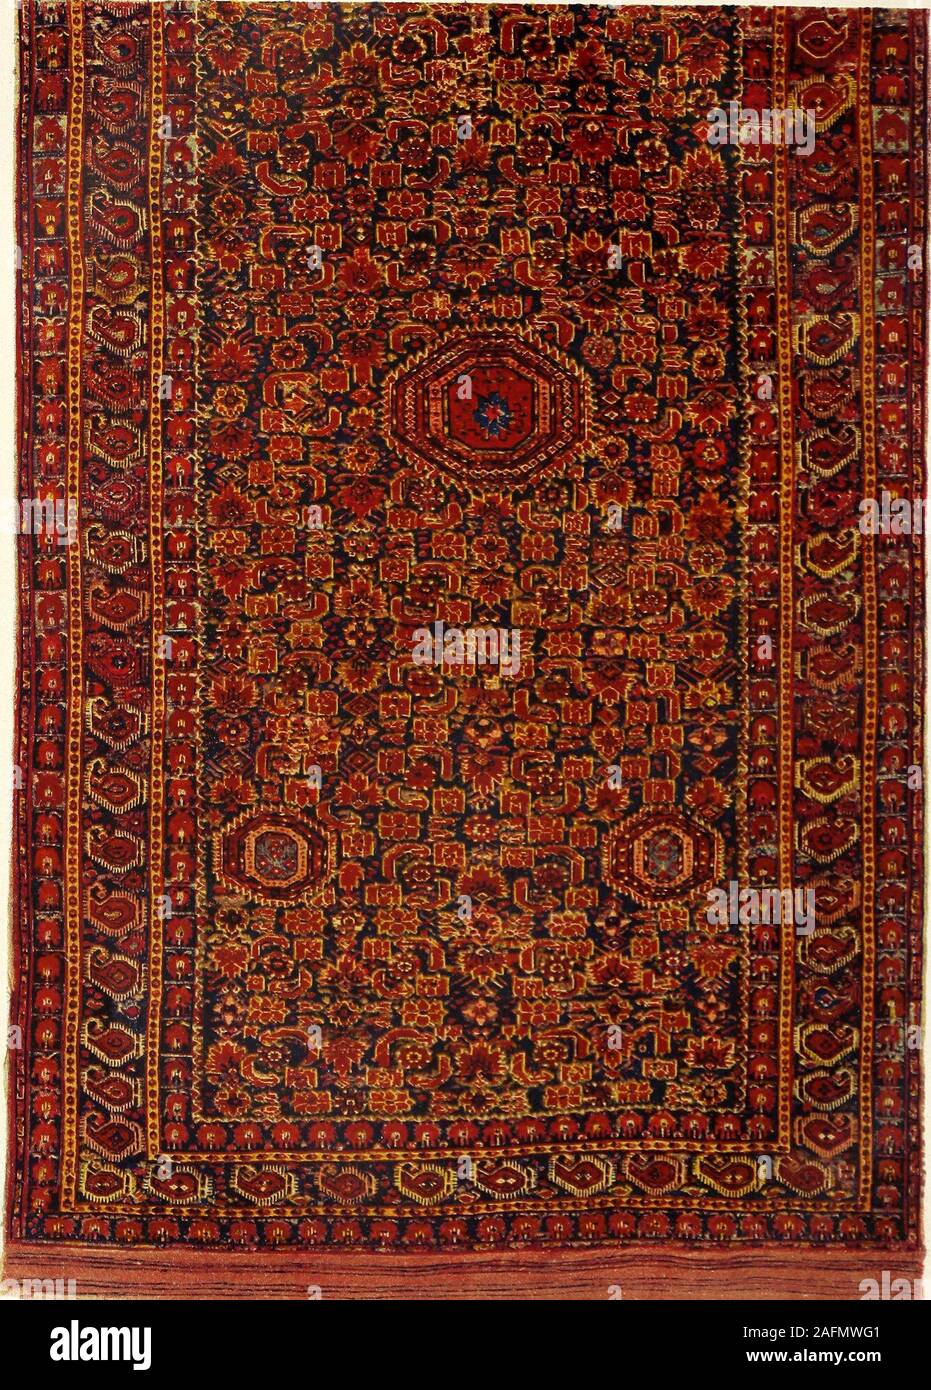 Dans Orient-Teppich der Geschichte, Kunstgewerbe und Handel.  Schlangenteppich Turkmenischer Teppich, genannt. Persischblauem  Grunöevermischt mit auf Grün, finden wir auf dem ganzen Teppich verbreitet  eine tiefrotegeometrische Schlangenfigur l ...